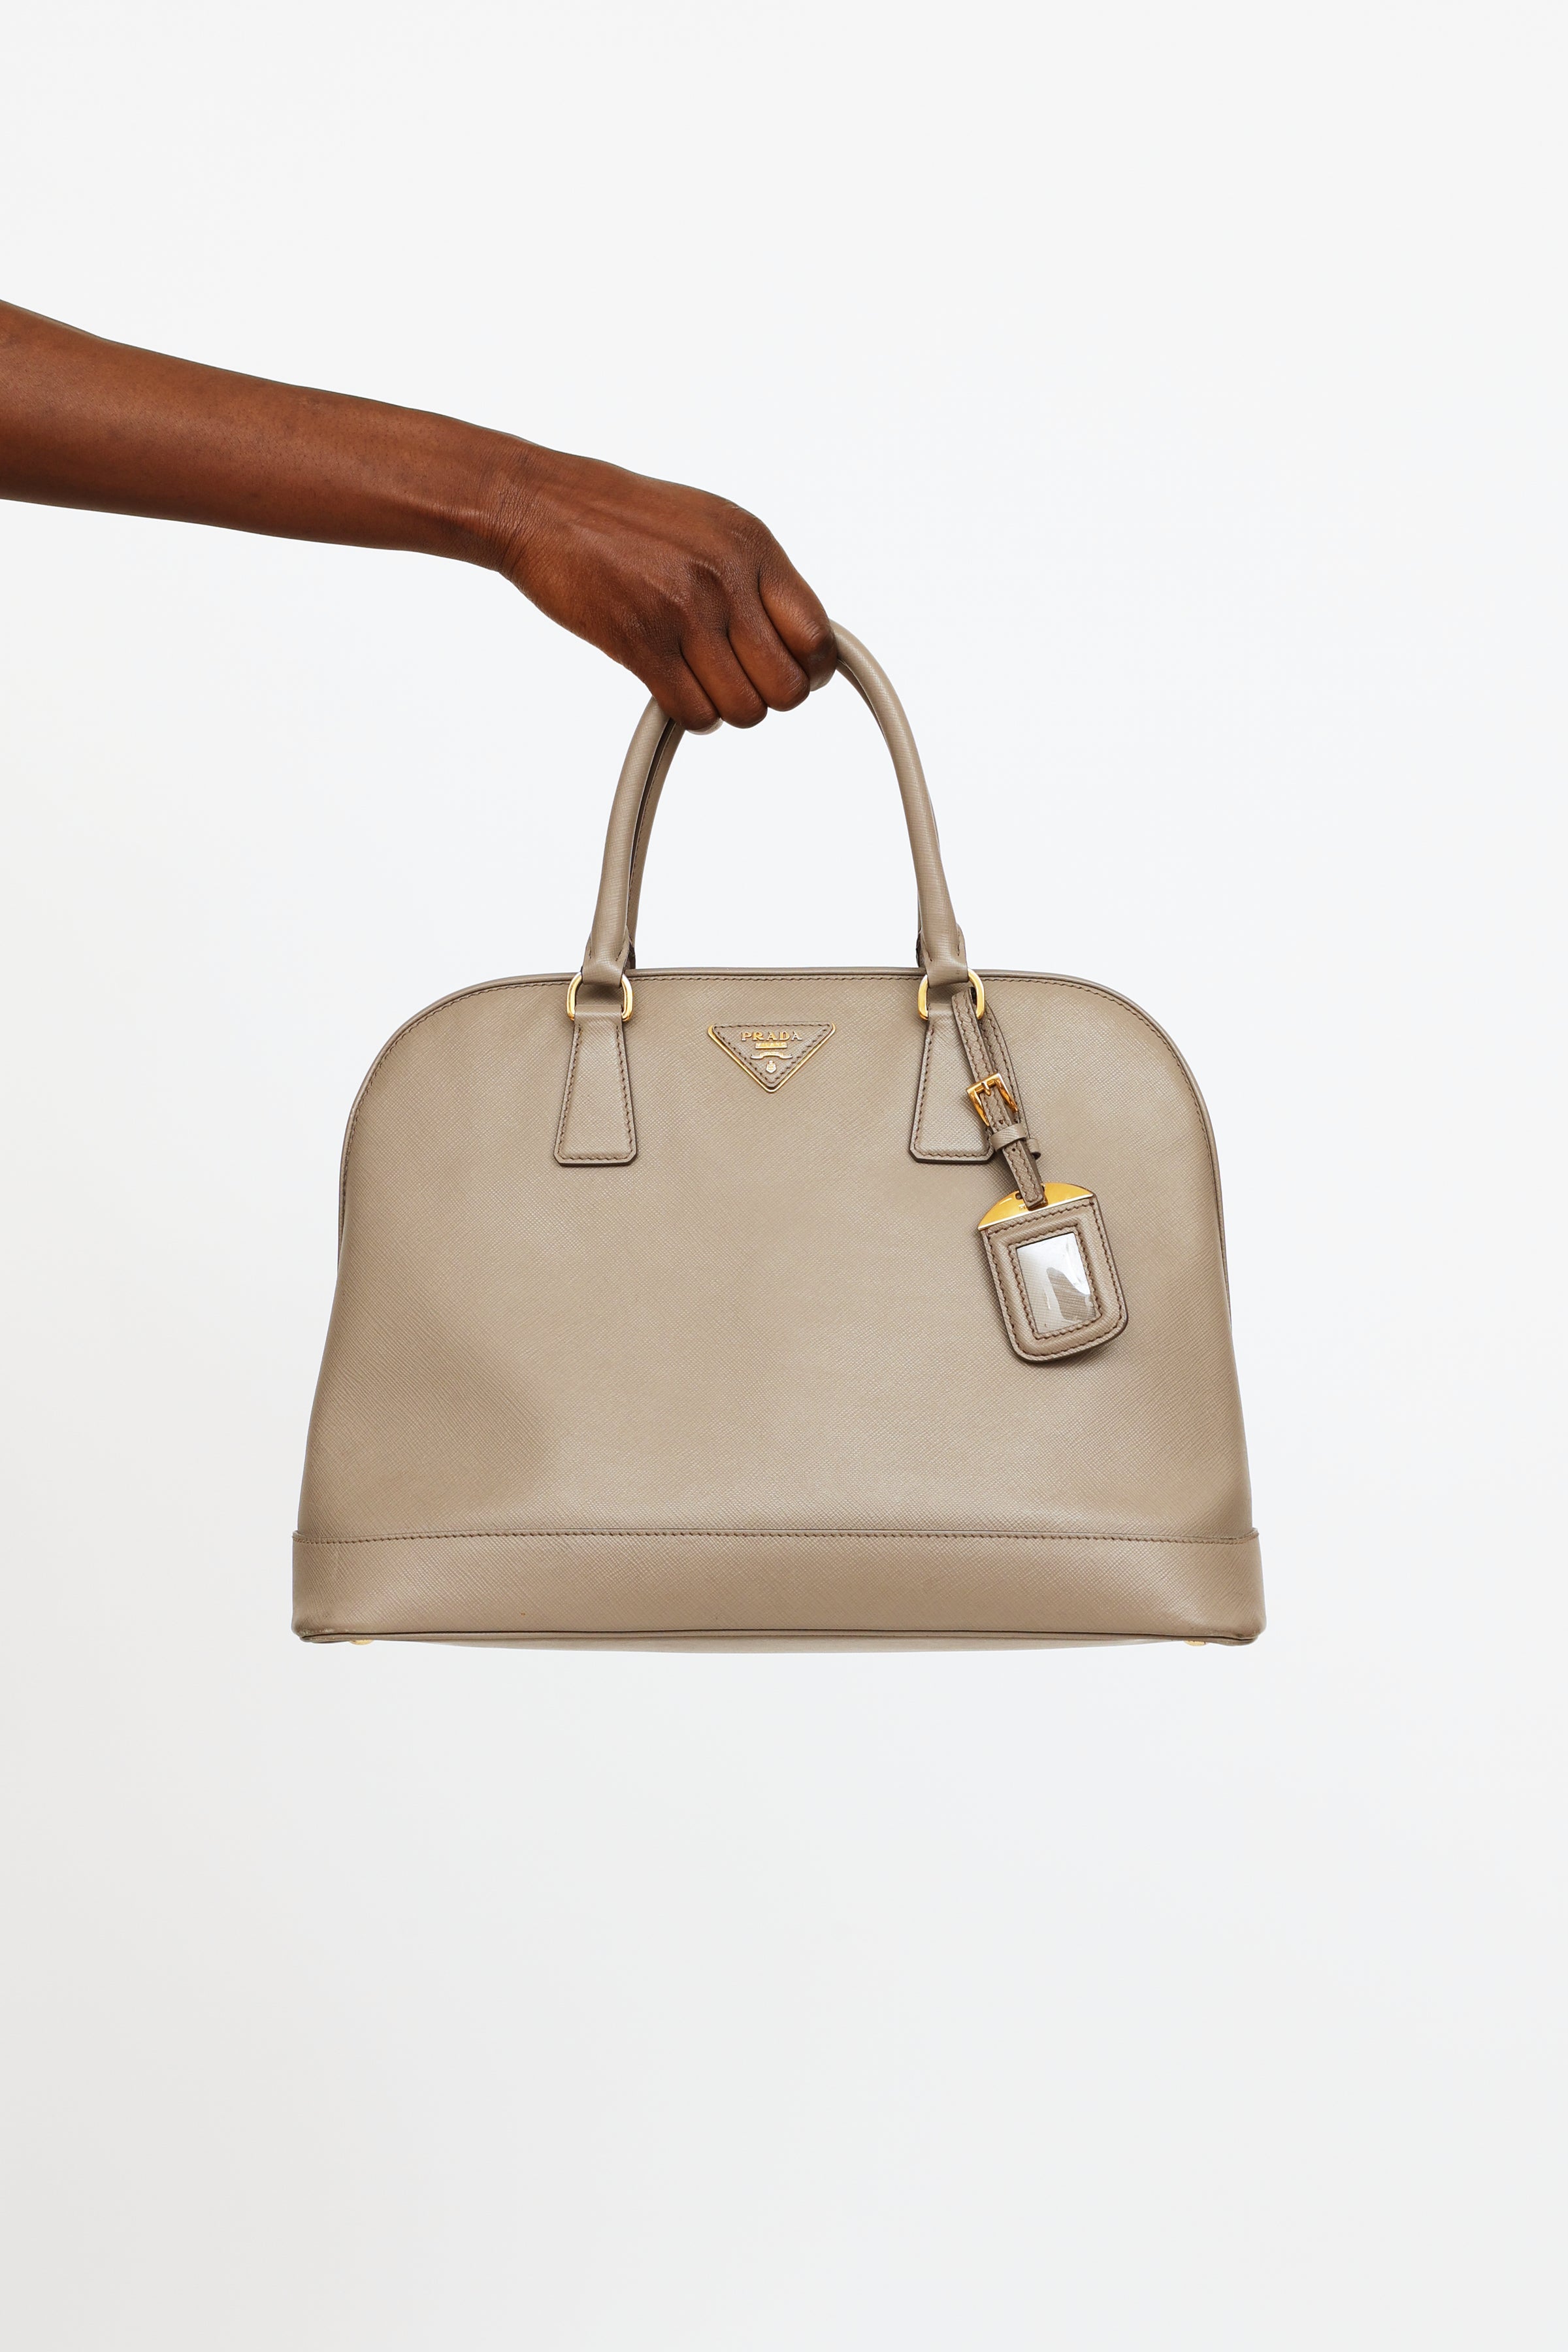 Prada, Bags, Authentic Prada Promenade Bag White Saffiano Leather Hand  Shoulder Bag